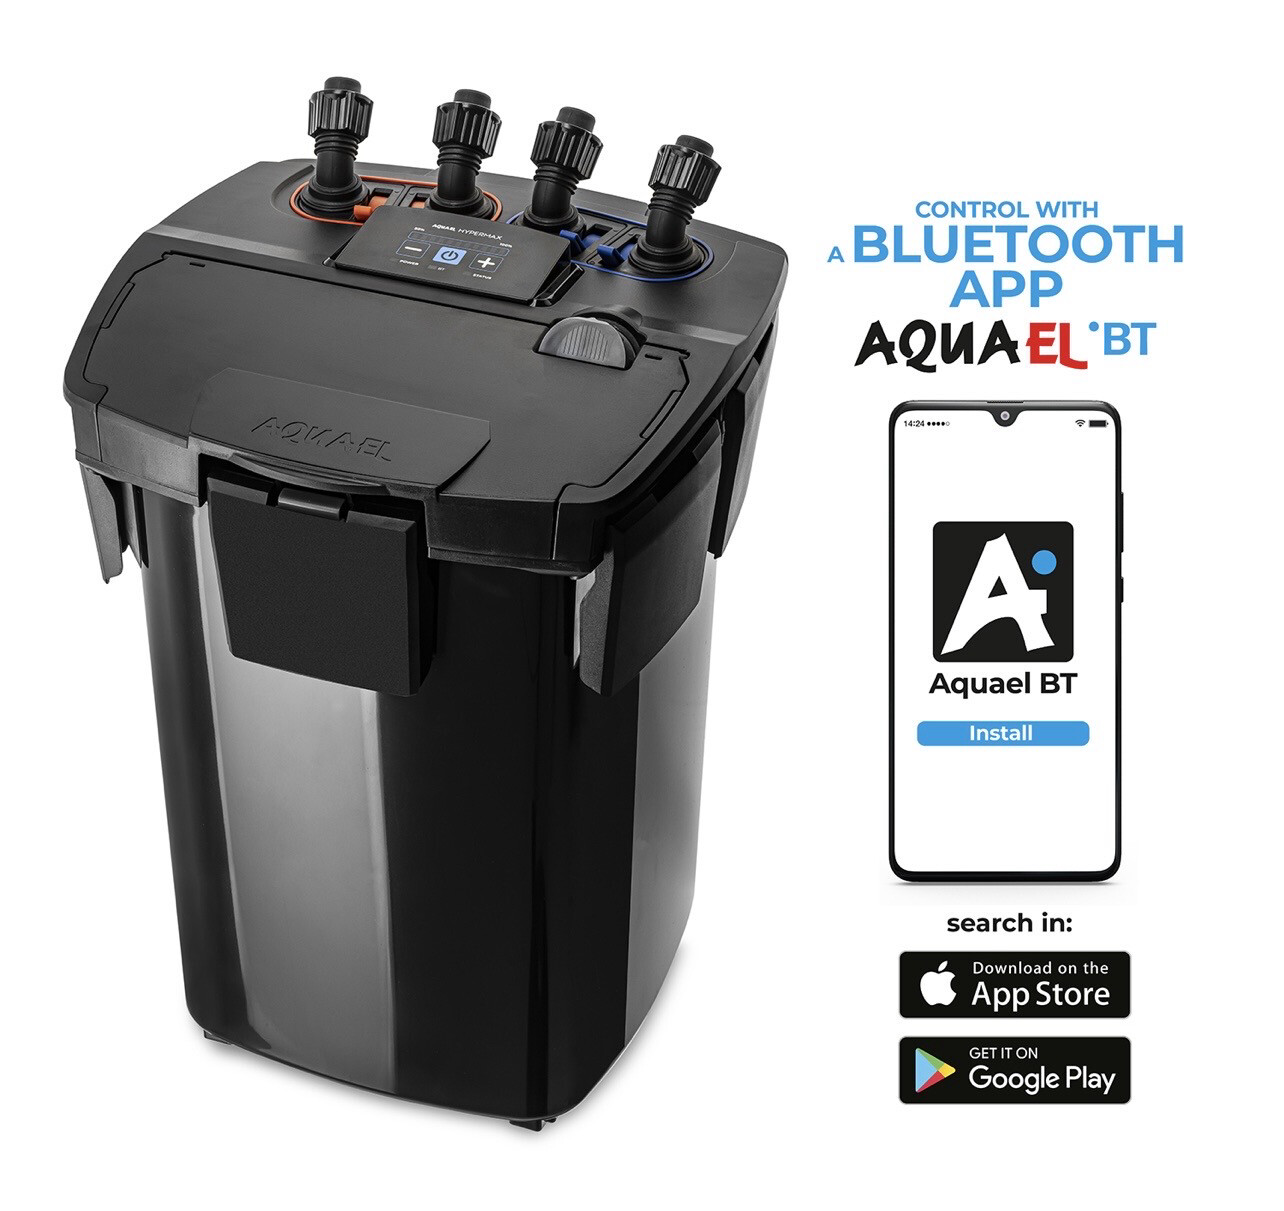 NUEVO Filtro Hypermax 4500 BT (Bluetooth) Aquael